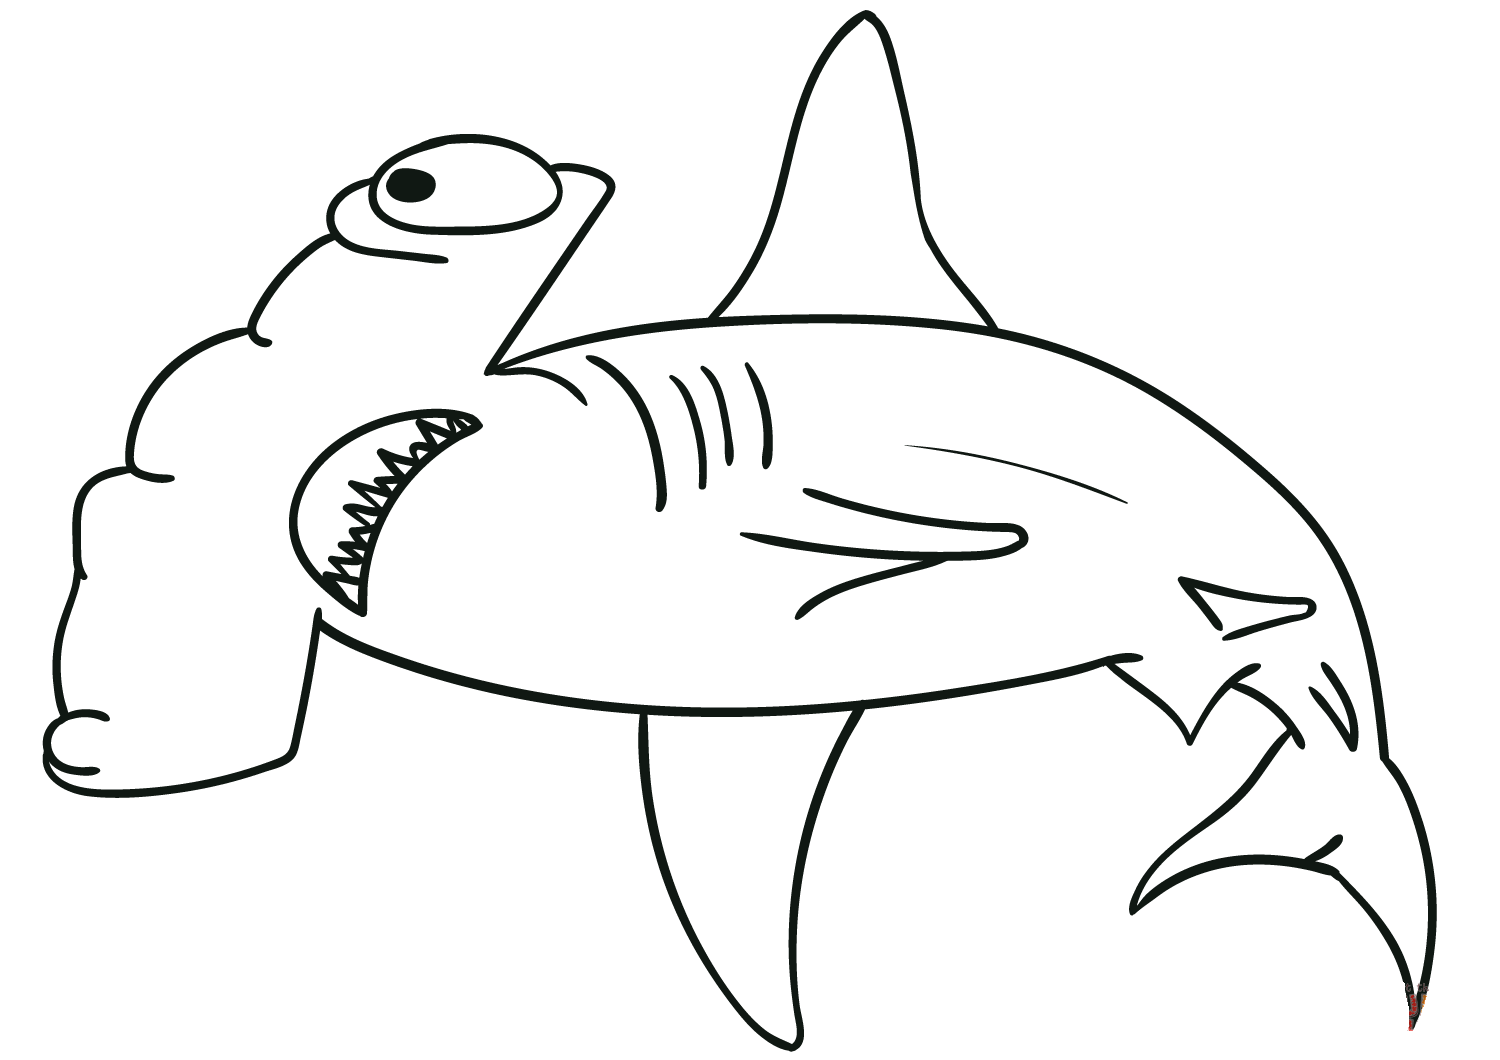 Hammerhai hat eine hammerartige Form Malseite